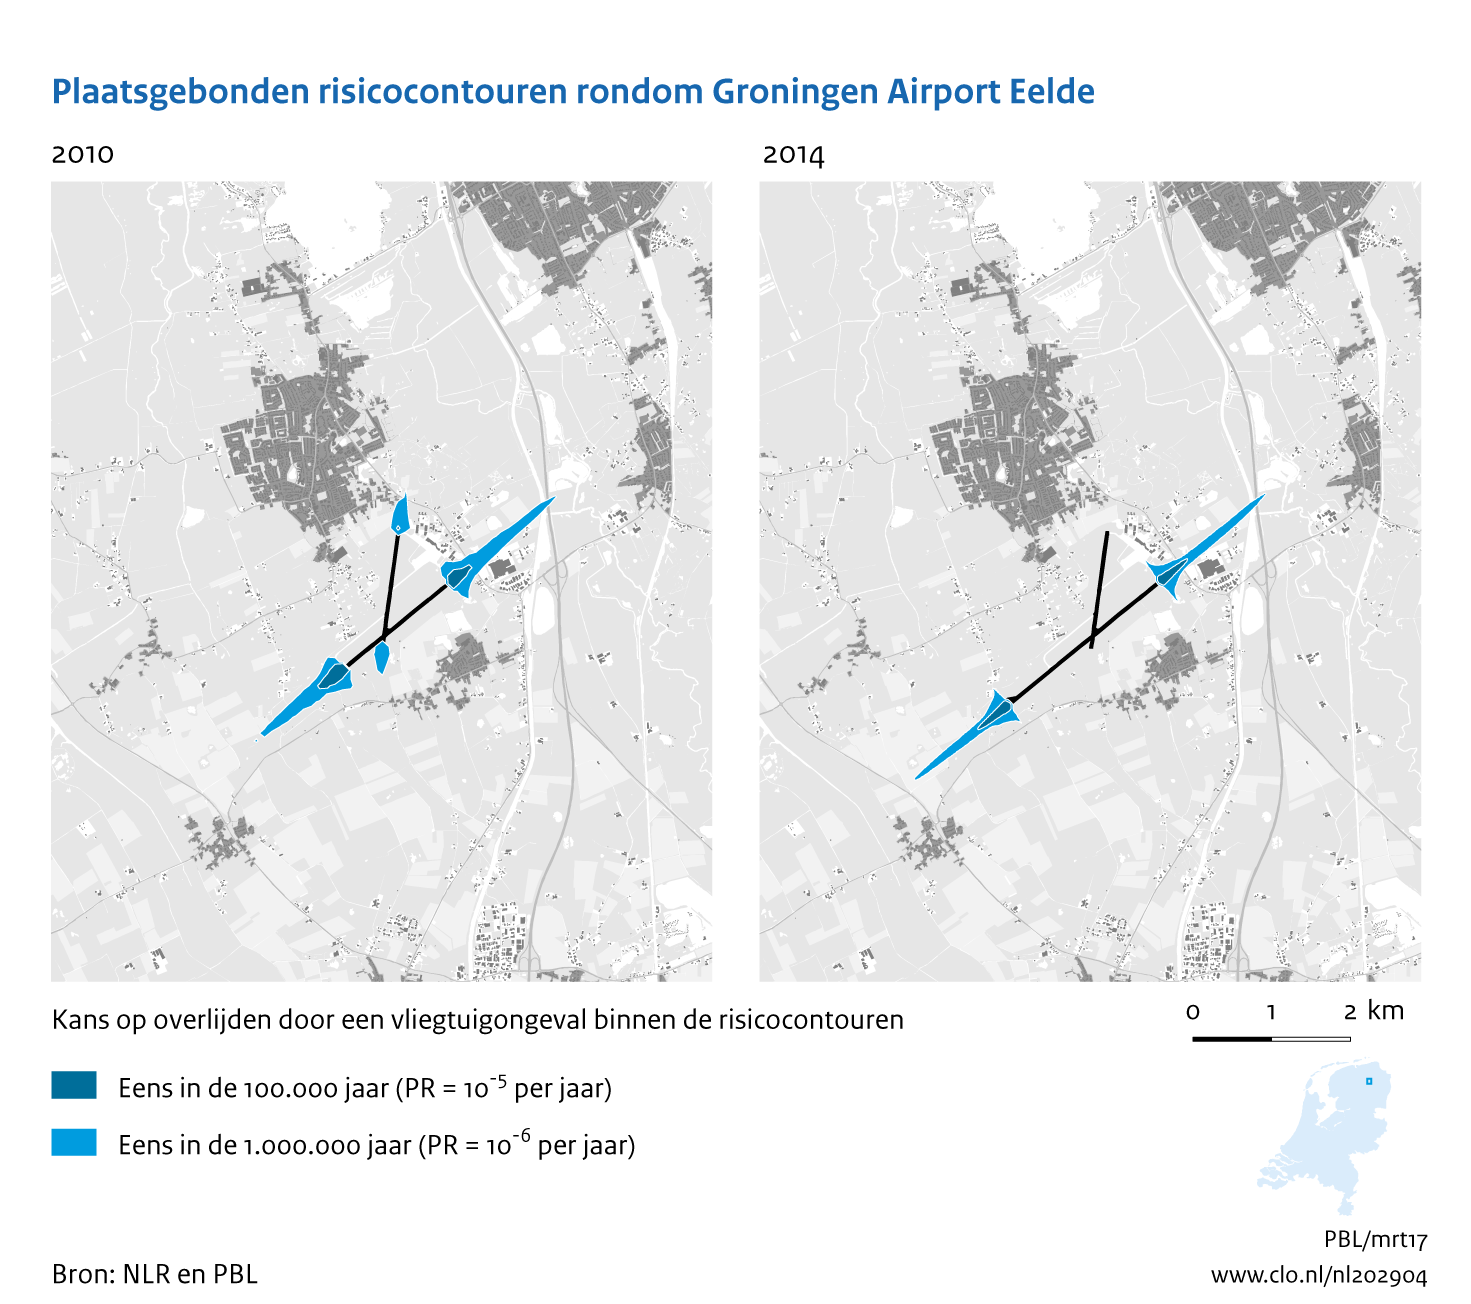 Figuur Plaatsgebonden risicocontouren rondom Groningen Airport Eelde, 2010-2014. In de rest van de tekst wordt deze figuur uitgebreider uitgelegd.